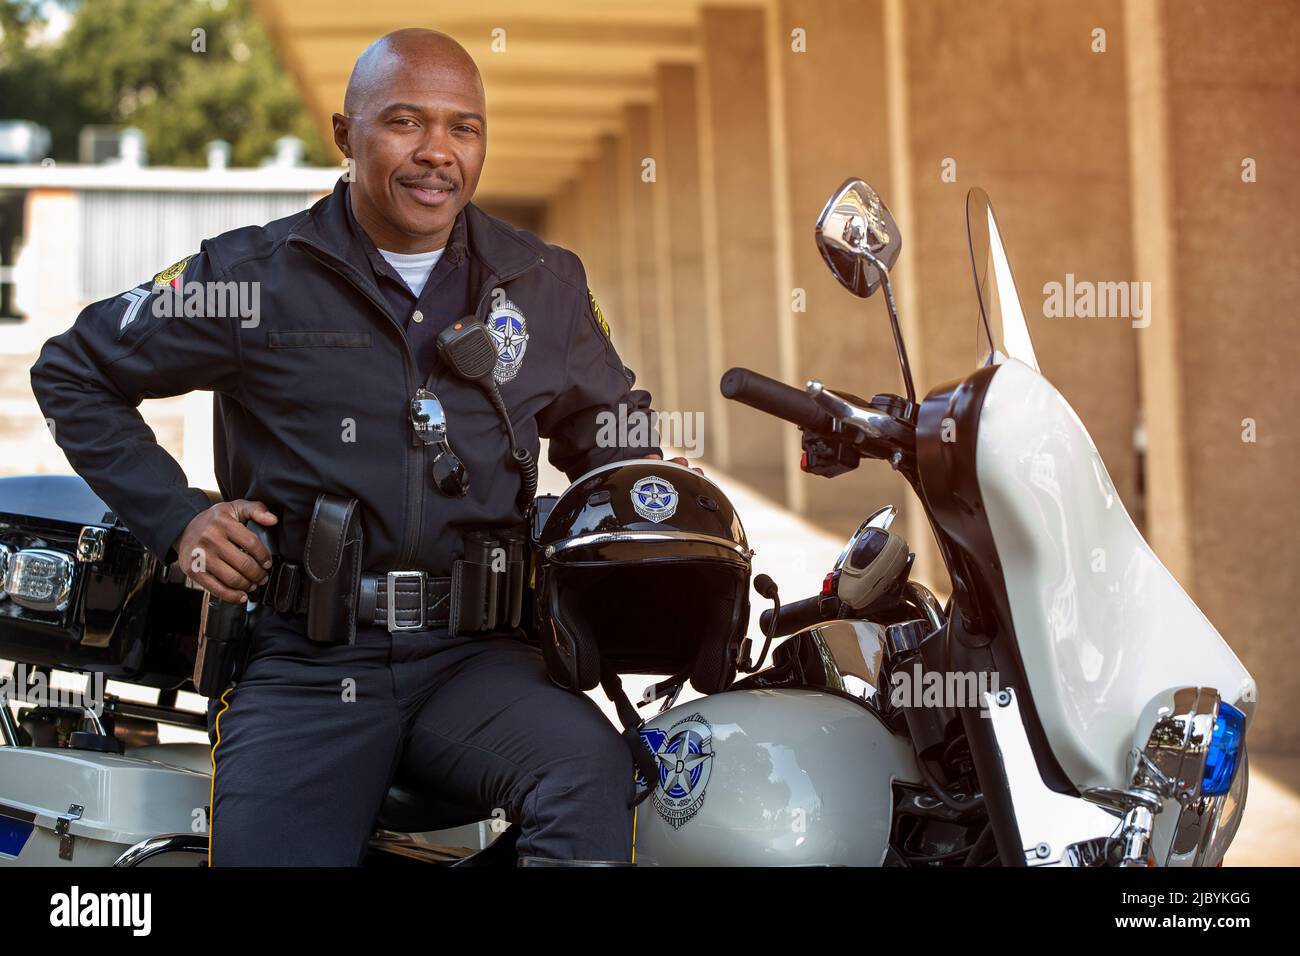 Portrait de l'officier de police assis sur sa moto à l'extérieur en regardant vers la caméra souriante Banque D'Images